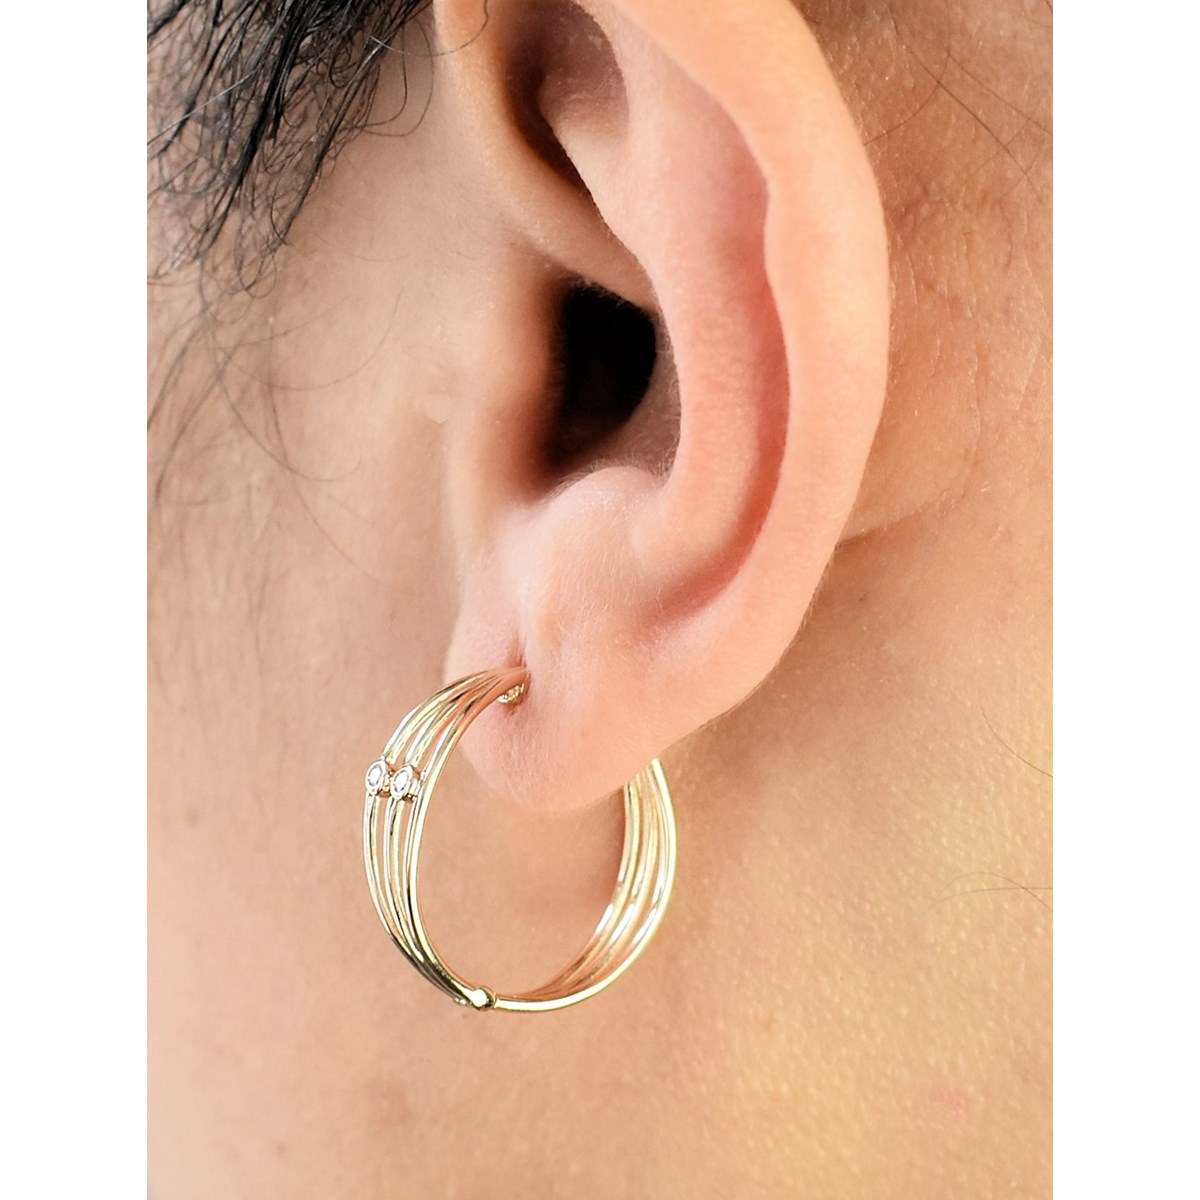 Boucles d'oreilles Créoles 3 rangs 2 oxydes de zirconium Plaqué or 750 3 microns - vue 3